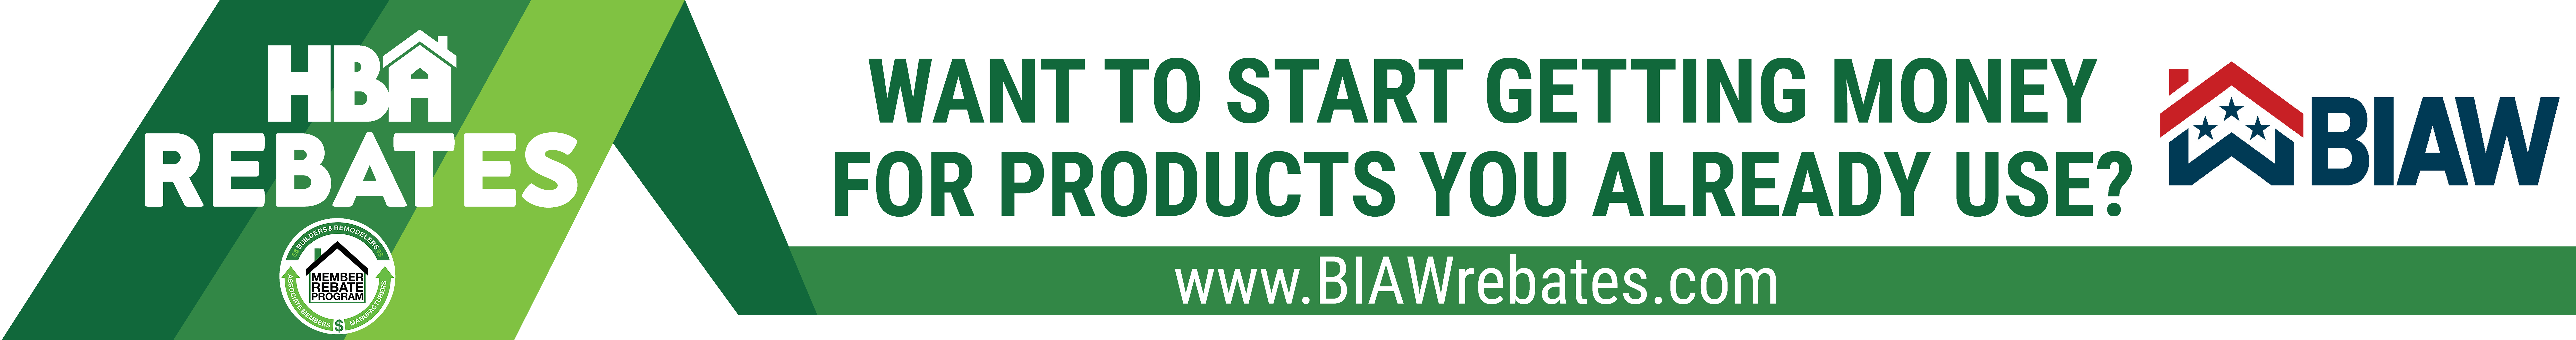 BIAW - HBA Rebates Banner (002)